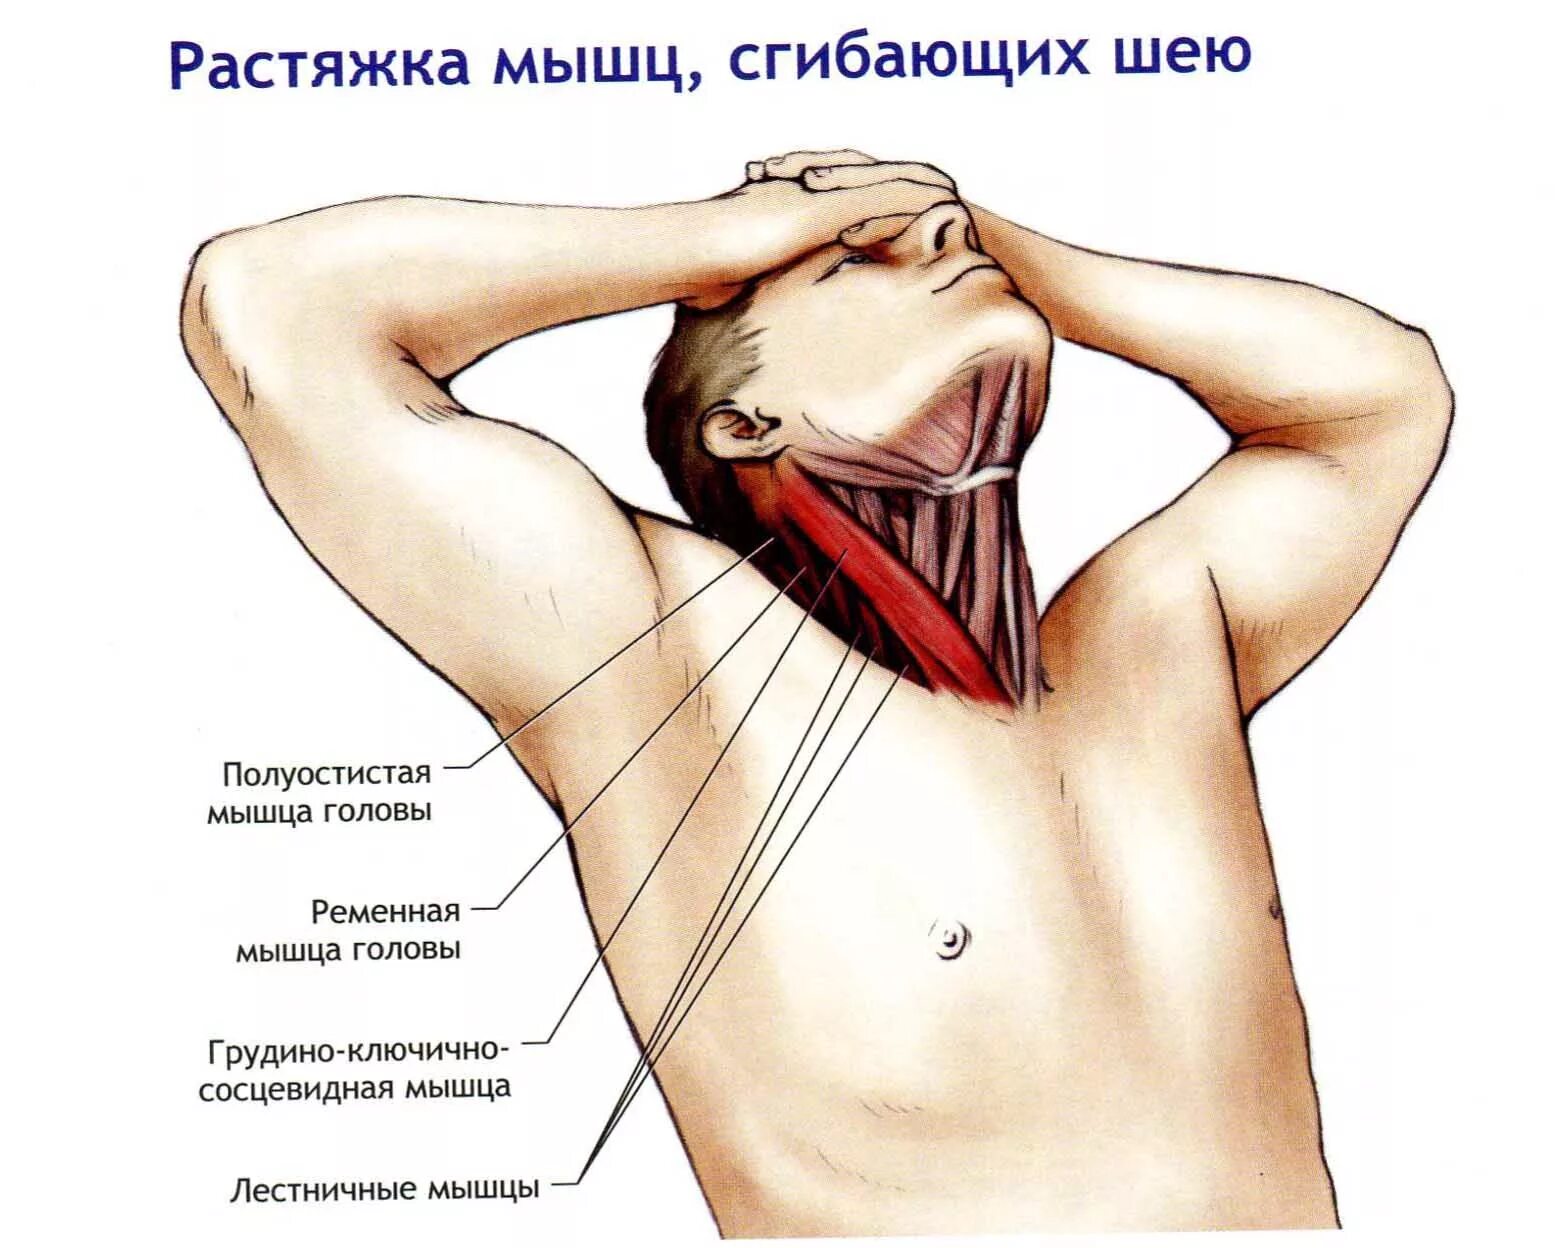 Что делать если сильно тянет. Грудино-ключично-сосцевидная мышца синергисты. Ременная мышца головы триггерные точки. Лестничная мышца и грудино ключично сосцевидная. Мышцы шеи.